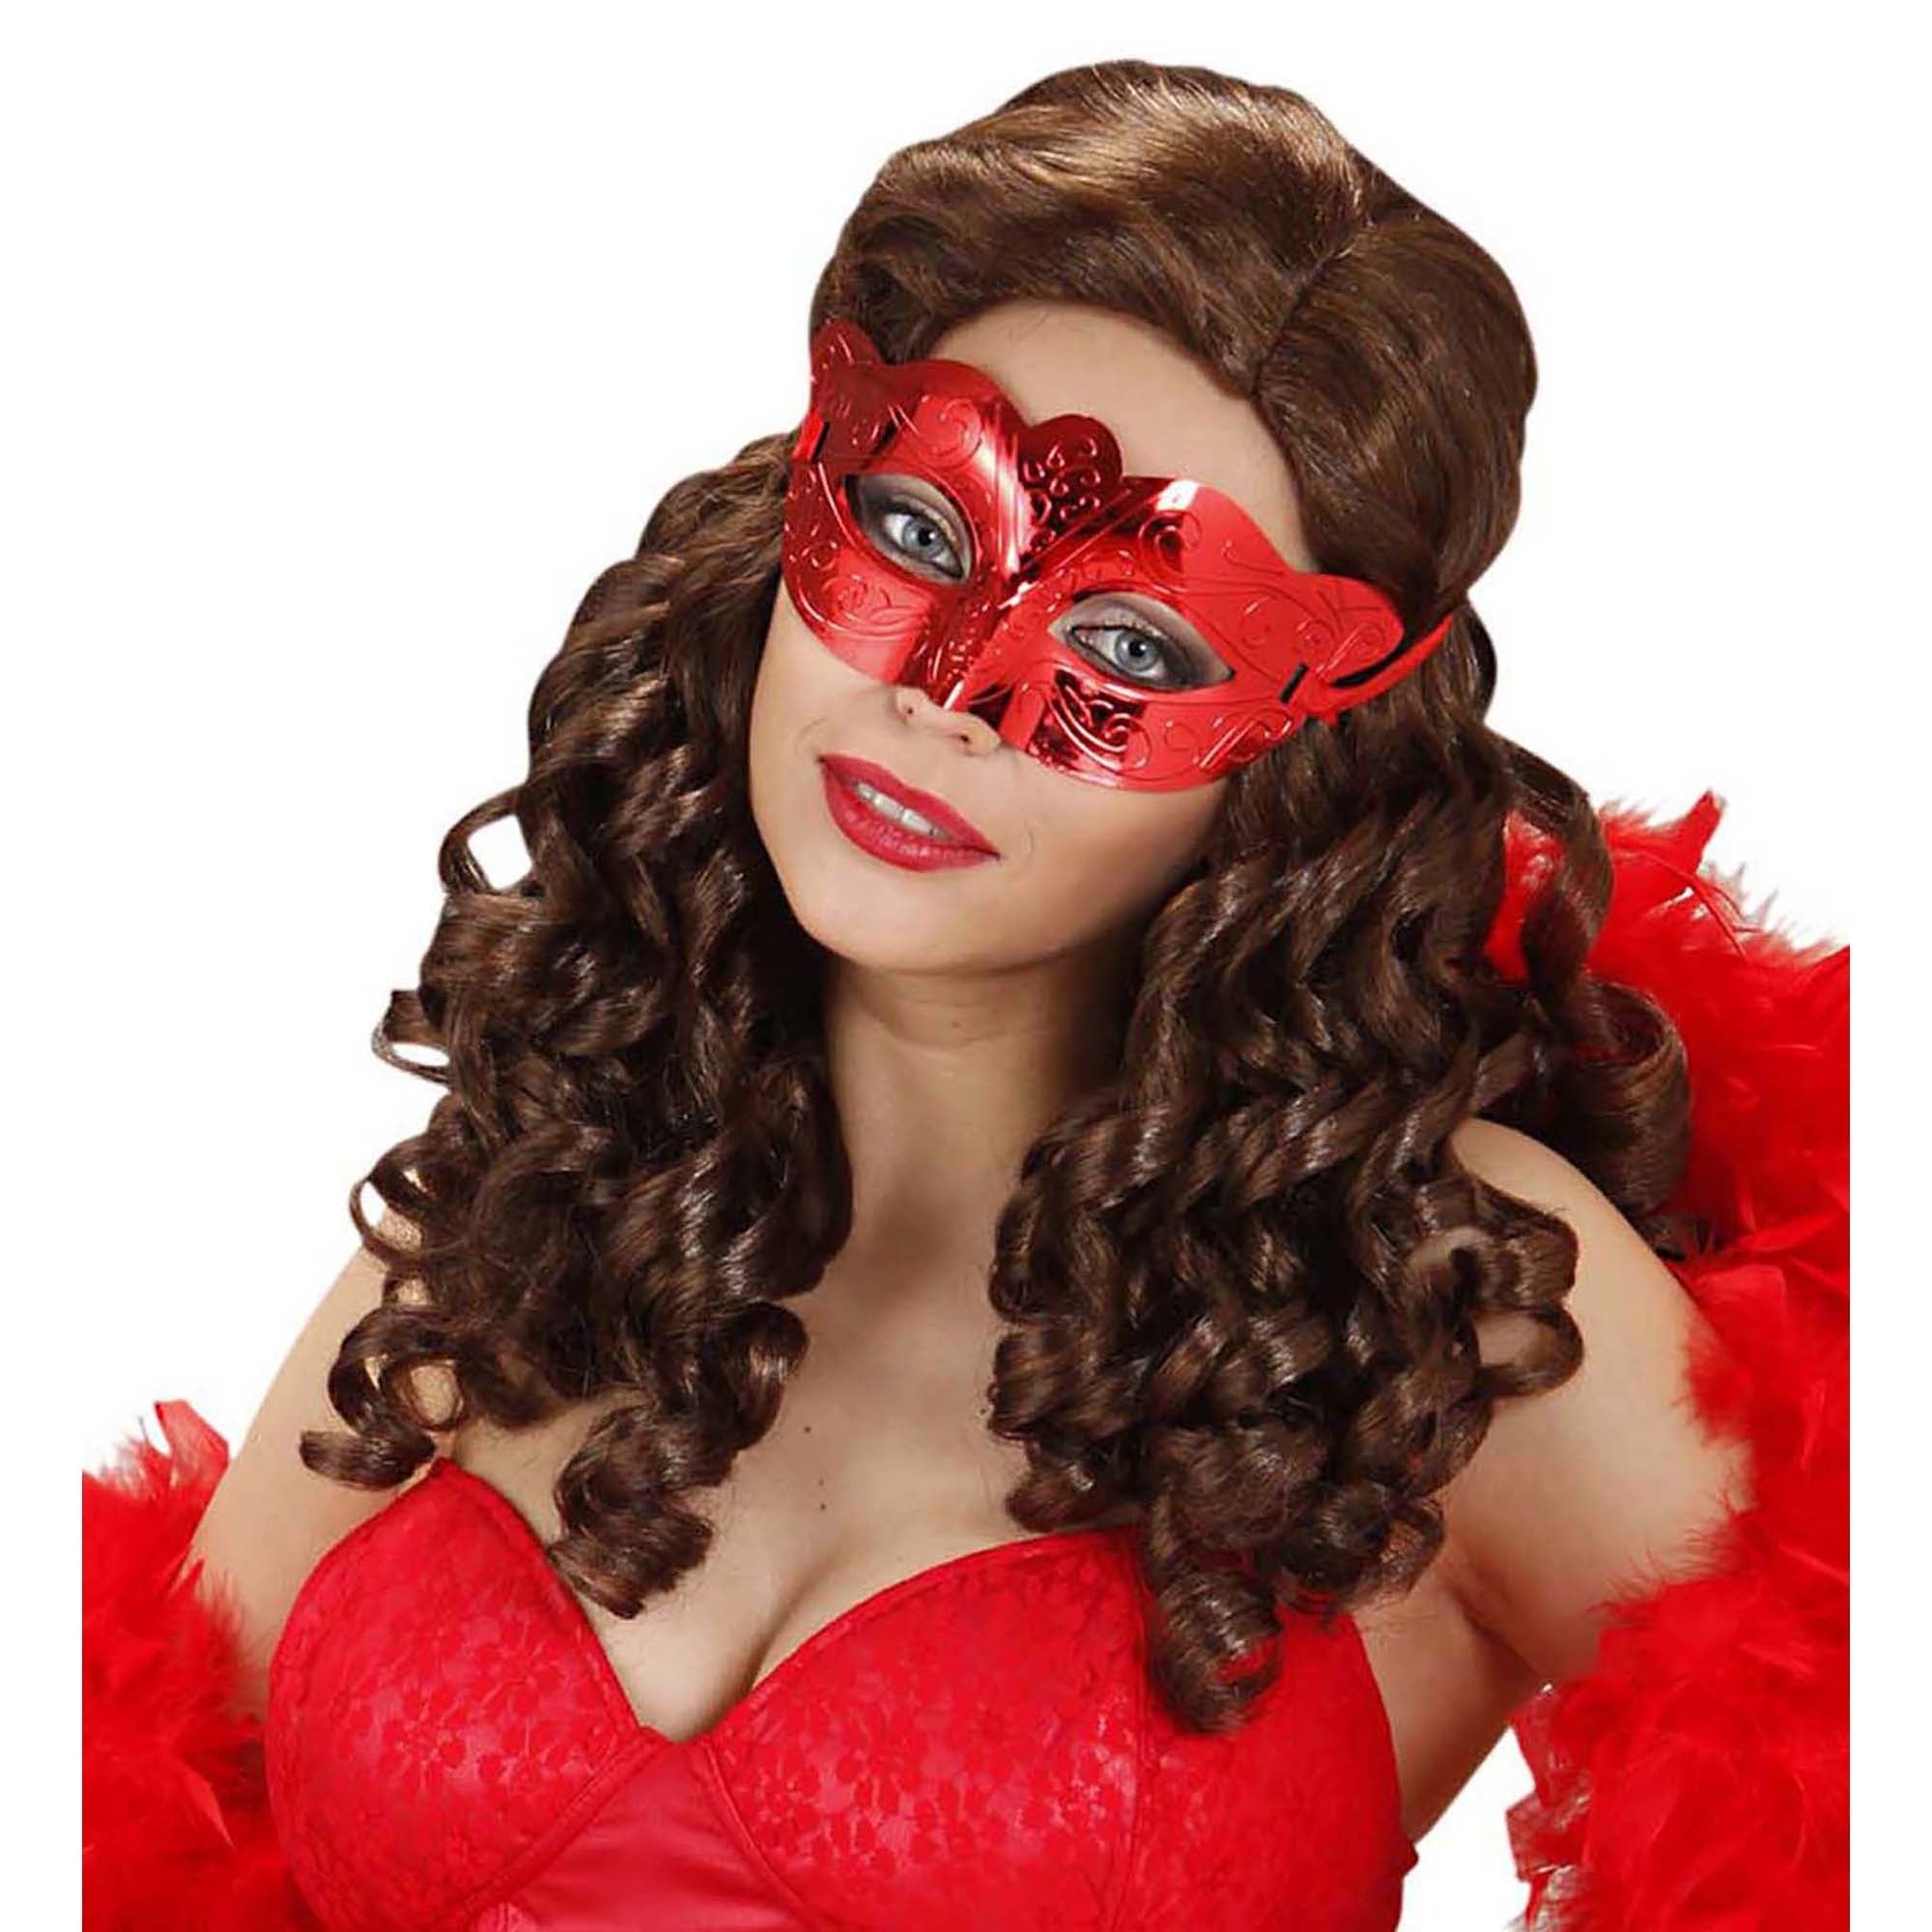 Oogmaskers: Oogmasker in rood metallic